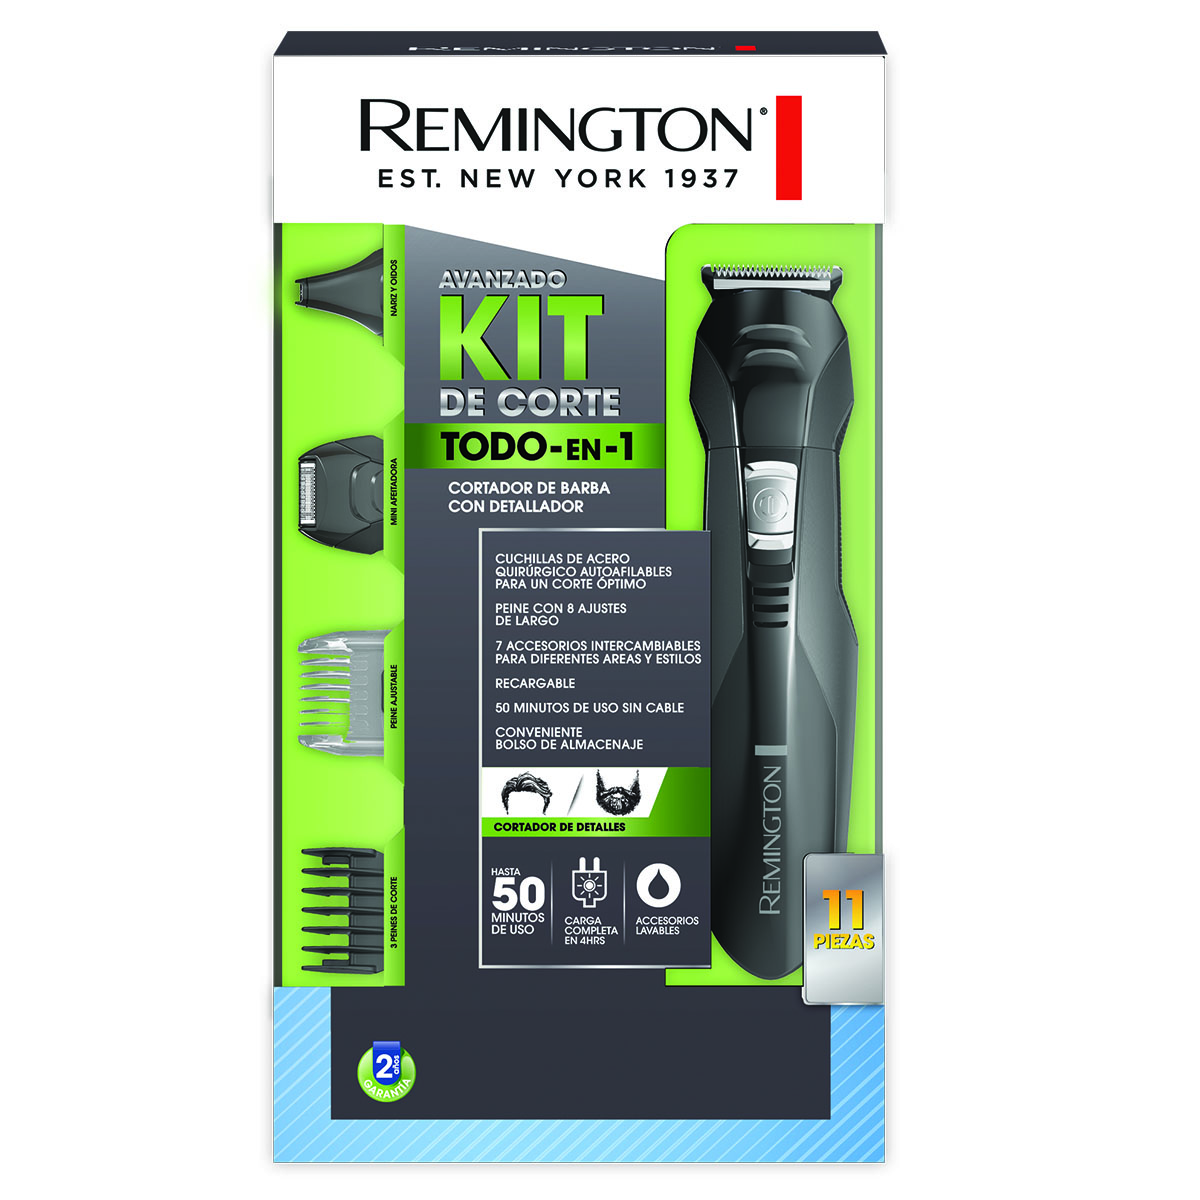 Shop online:  Kit de corte todo en 1 Remington (11 piezas)